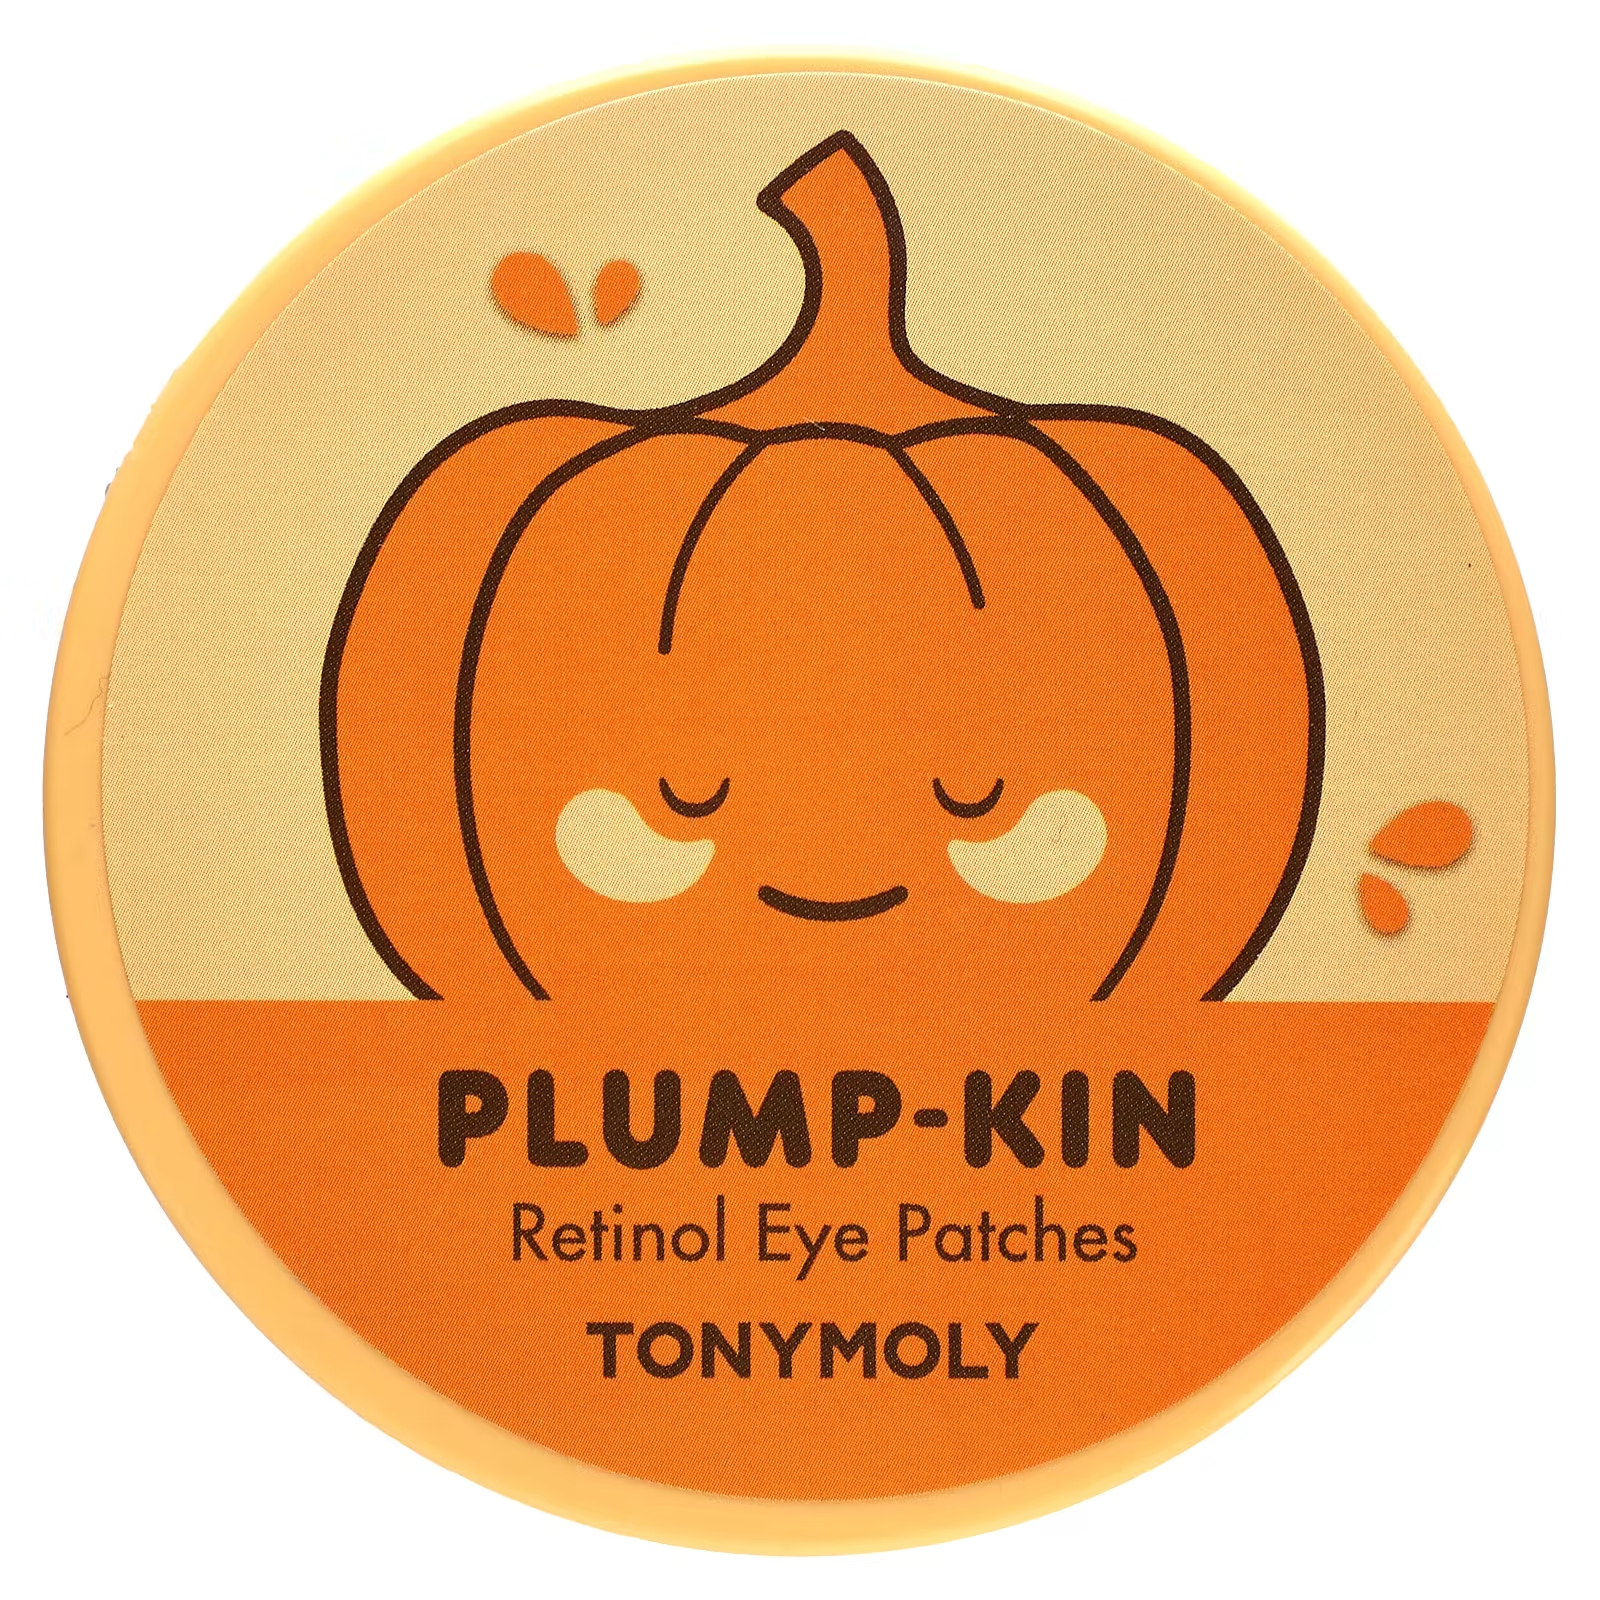 Tony Moly Plump-Kin патчи для глаз с ретинолом, 60 патчей по 2,96 унции (84 г) каждый tony moly plump kin крем для кожи вокруг глаз с ретинолом 30 г 1 06 унции